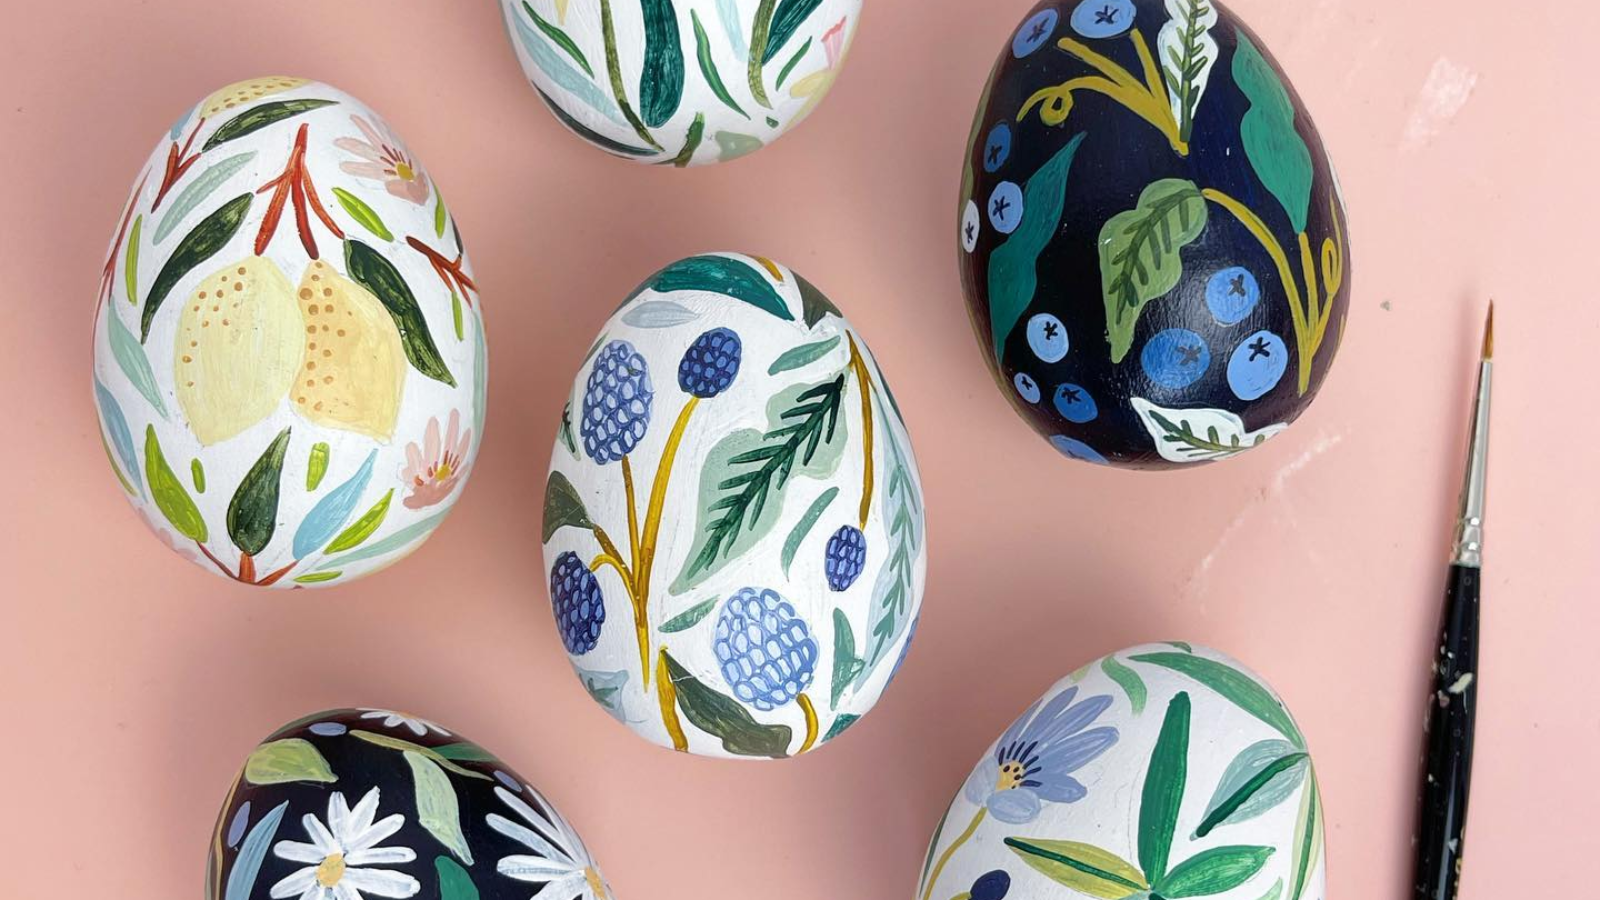 Vam letos manjka idej, kako barvati velikonočna jajca? Našli smo navdih